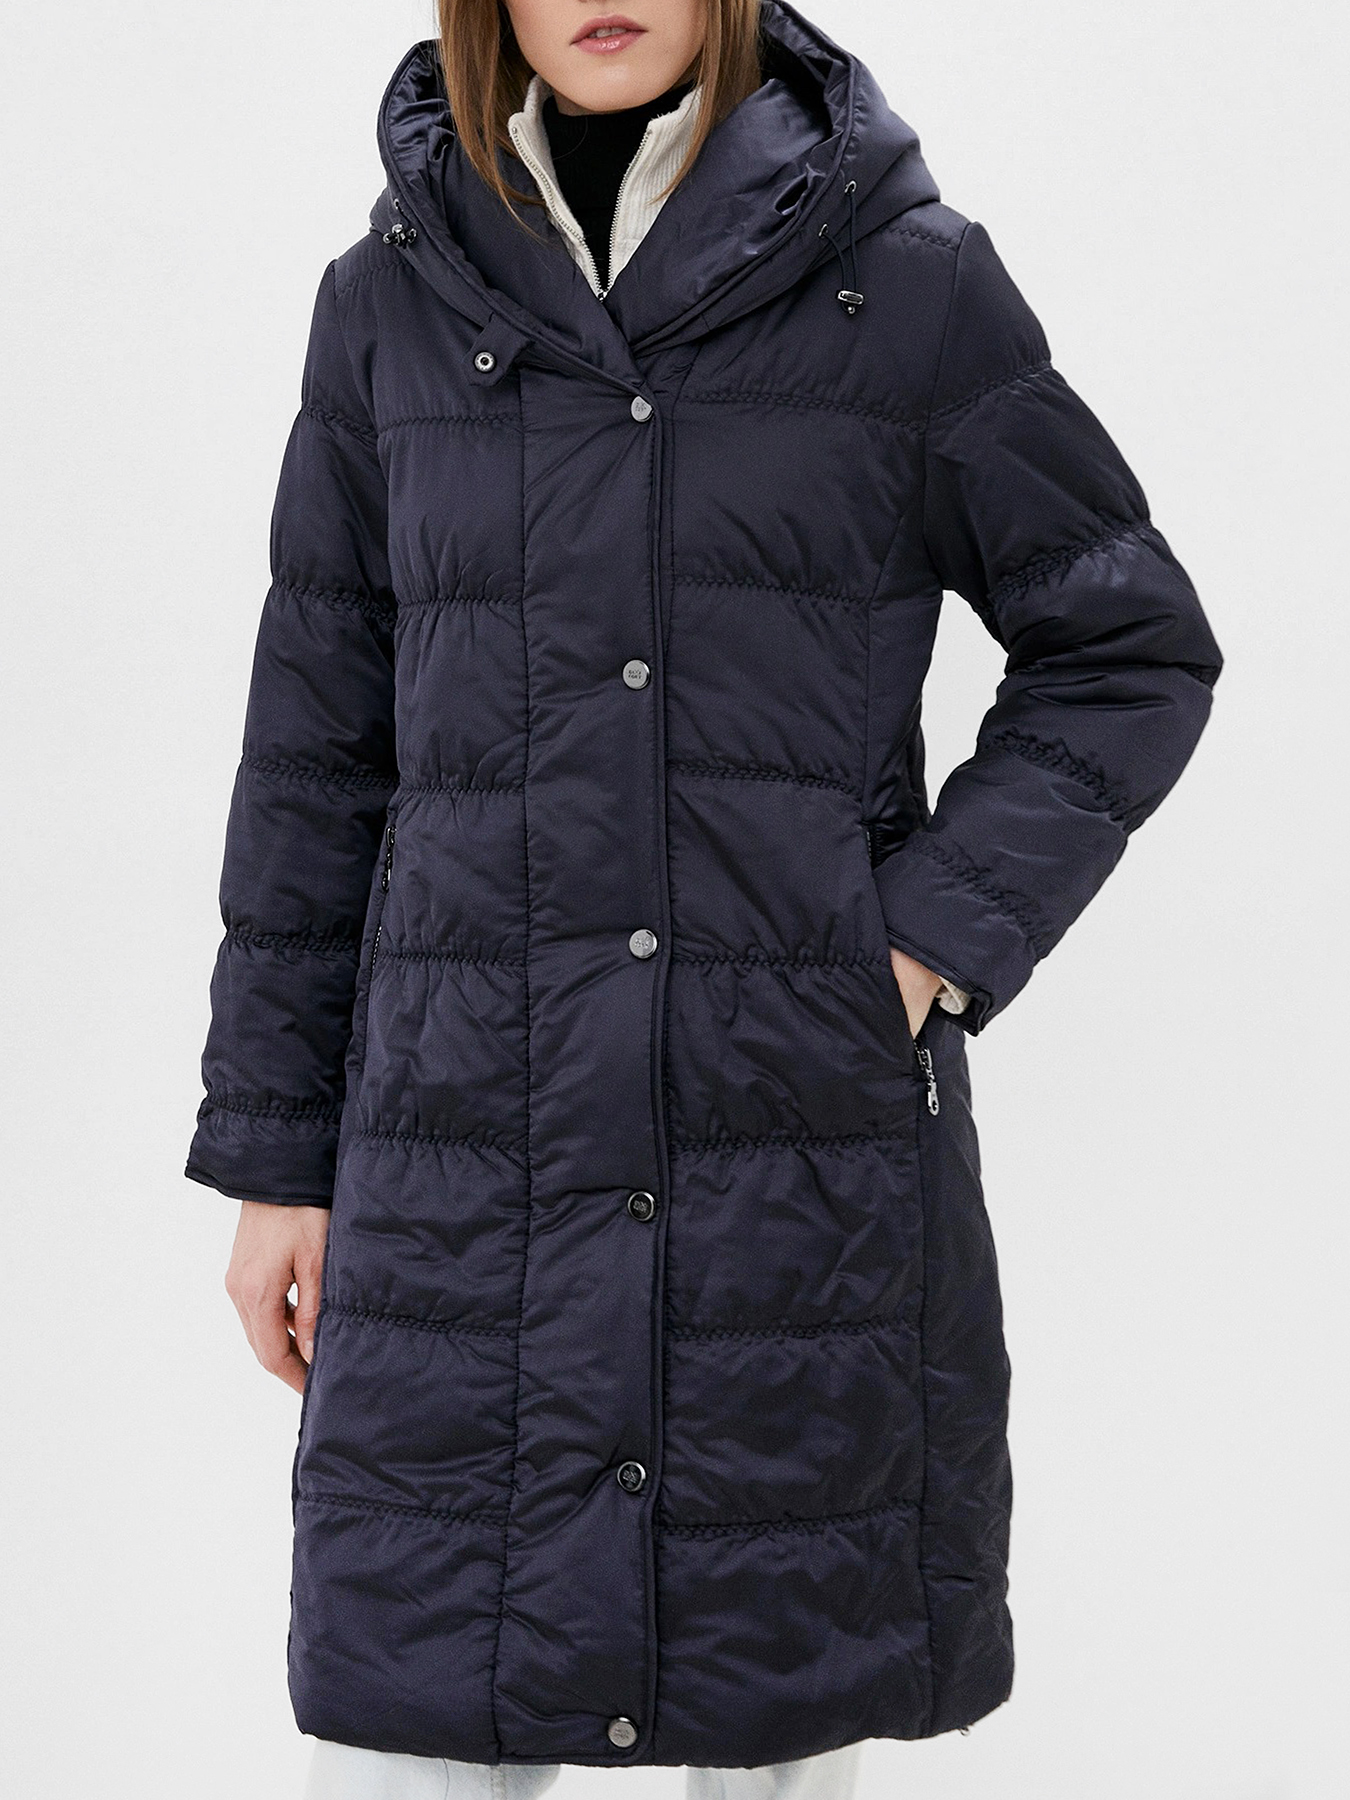 Пальто зимнее Dixi Coat 433576-020, цвет темно-синий, размер 44 - фото 1